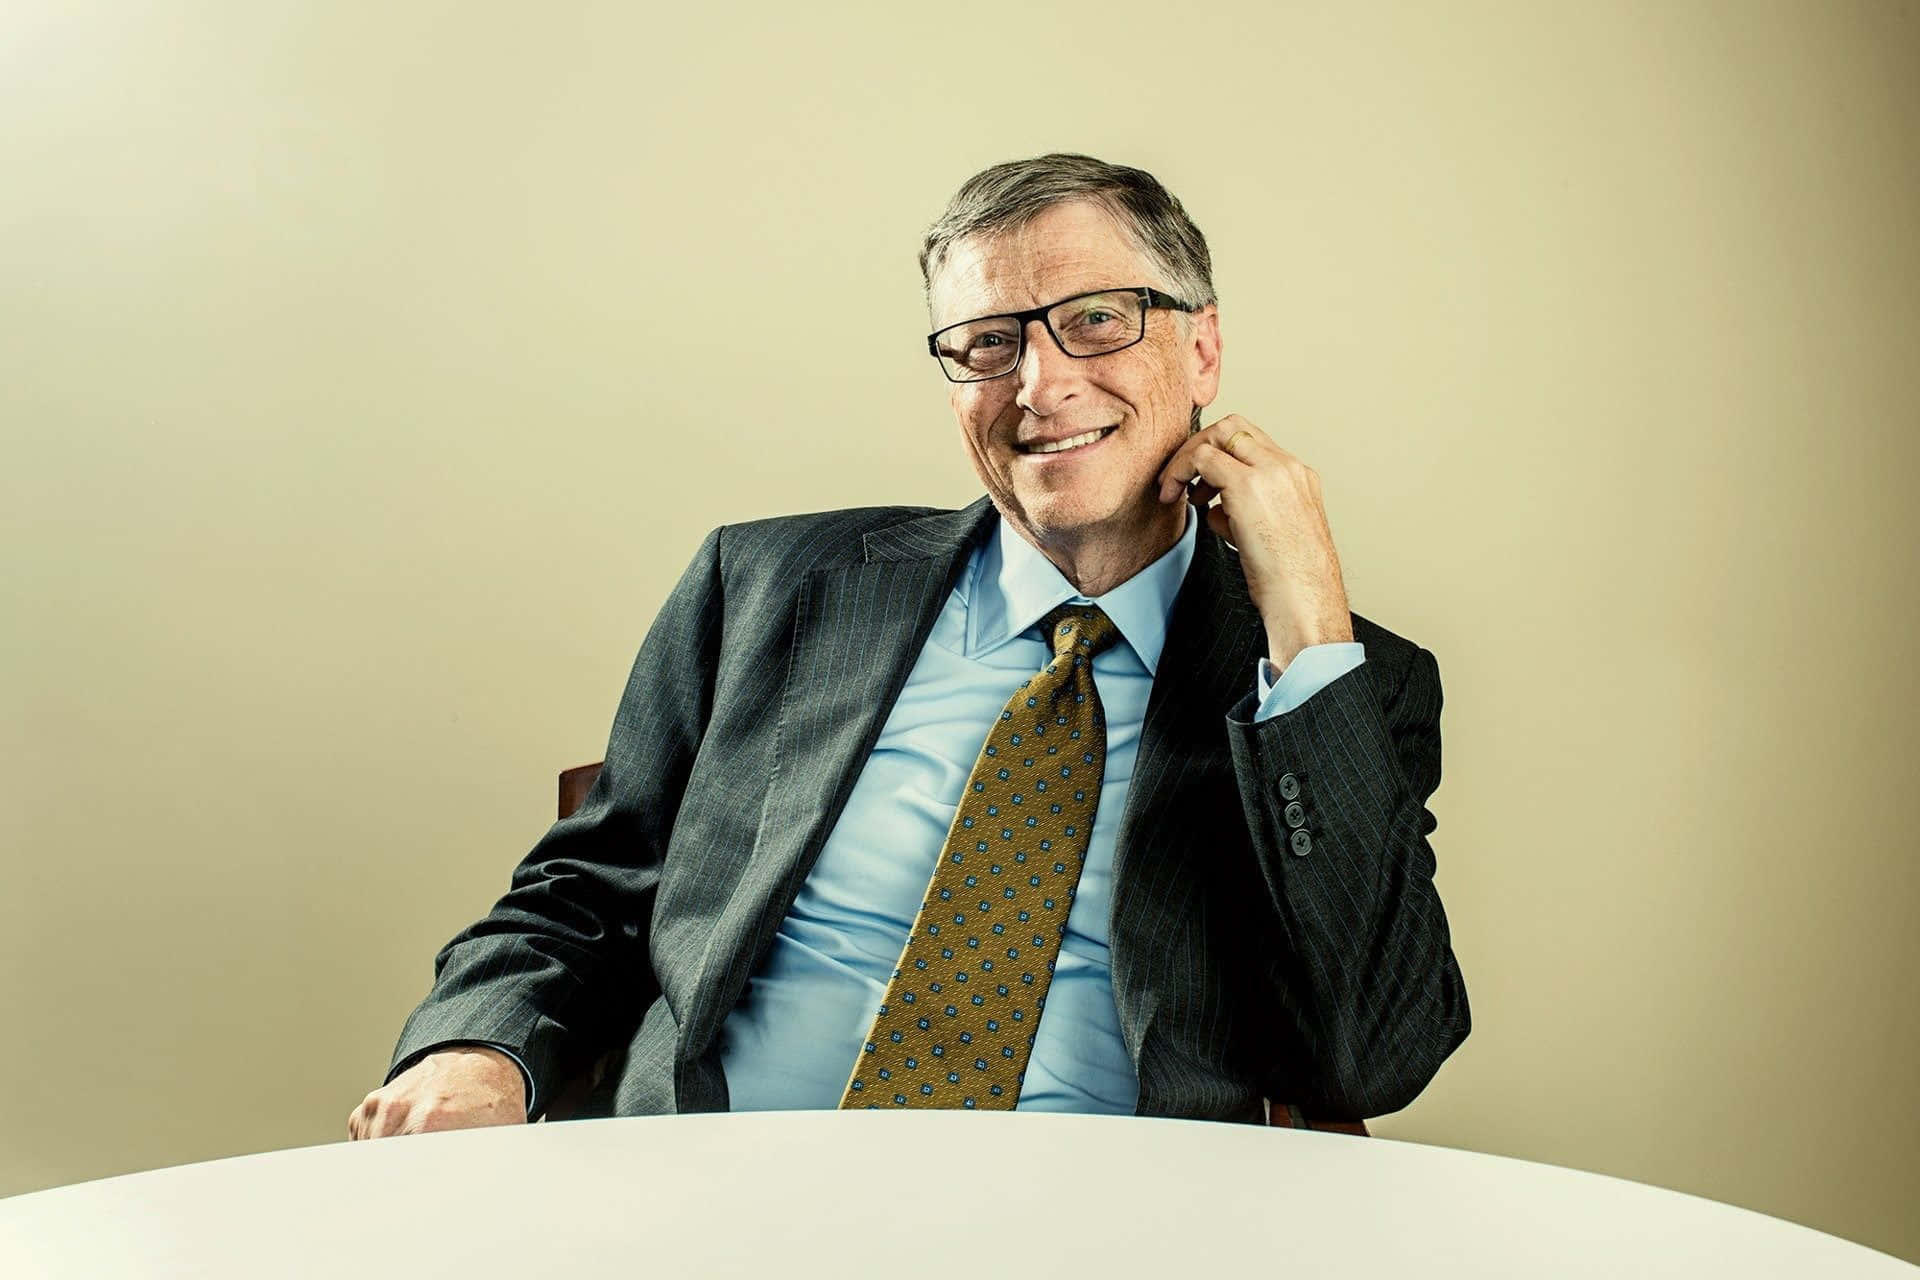 Bill Gates – Technology Mogul